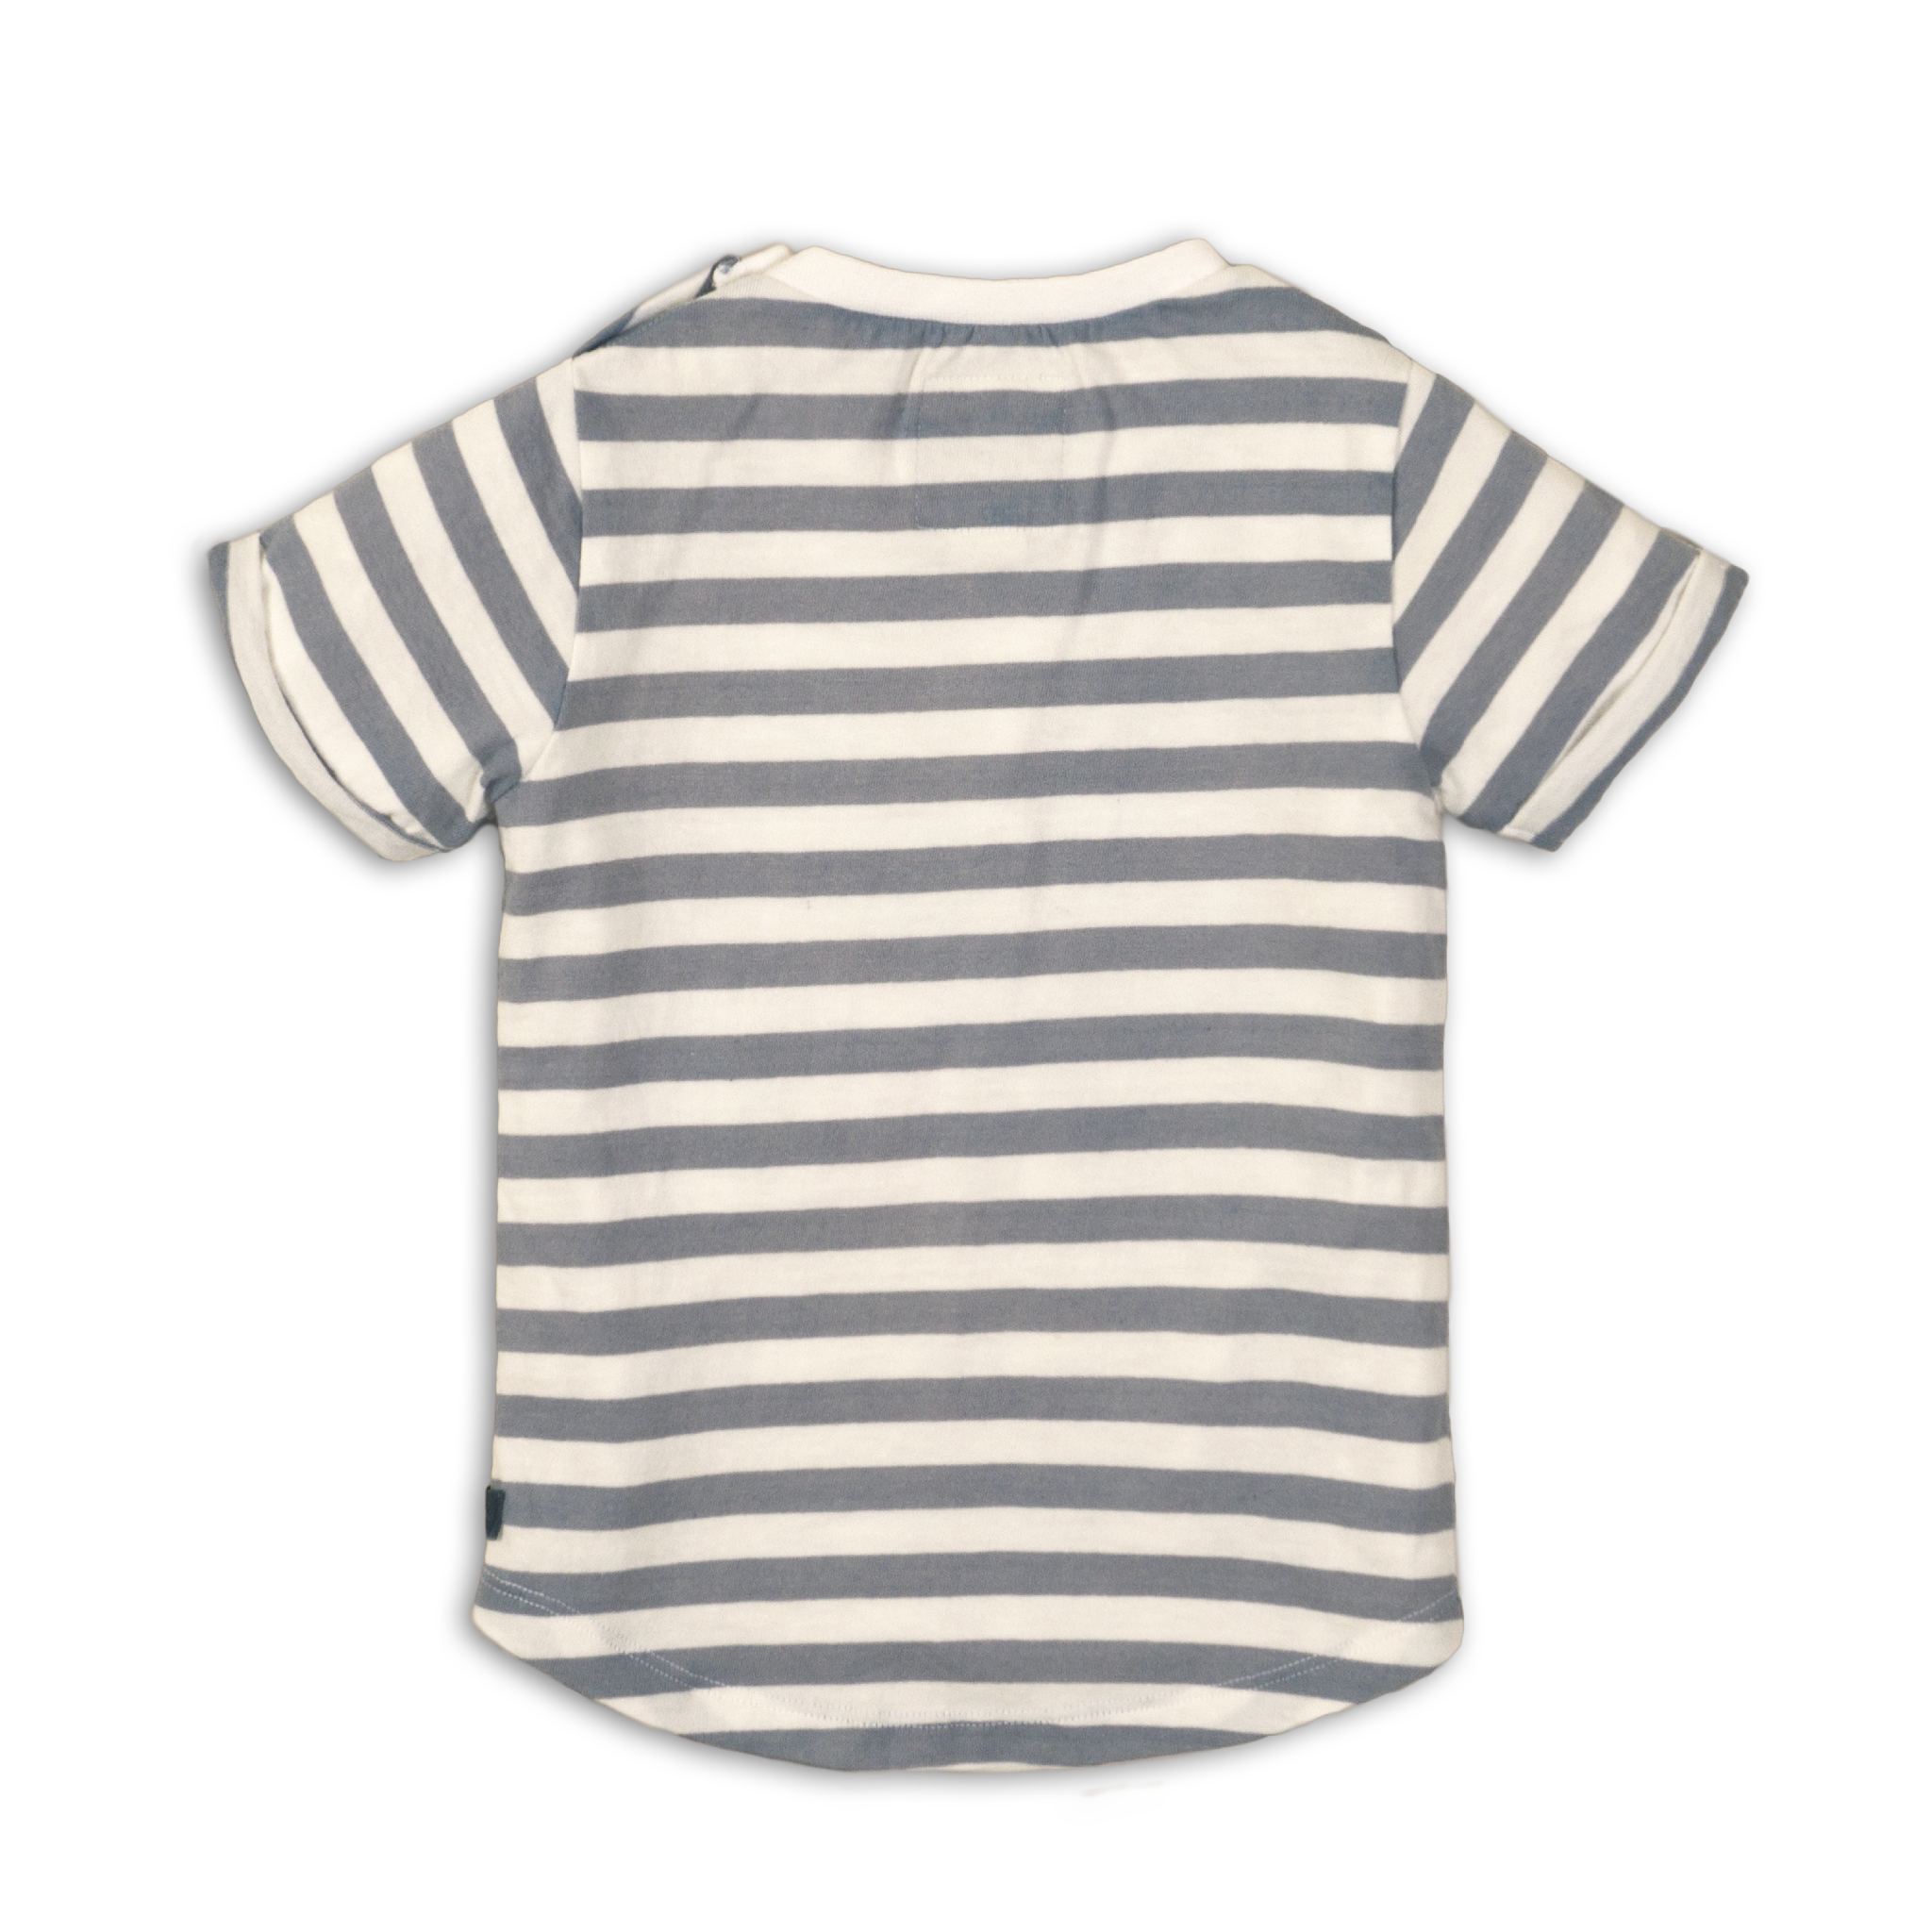 Baby Jongens Baby t-shirt van Koko Noko  in de kleur Stripes + light blue + white in maat 86.